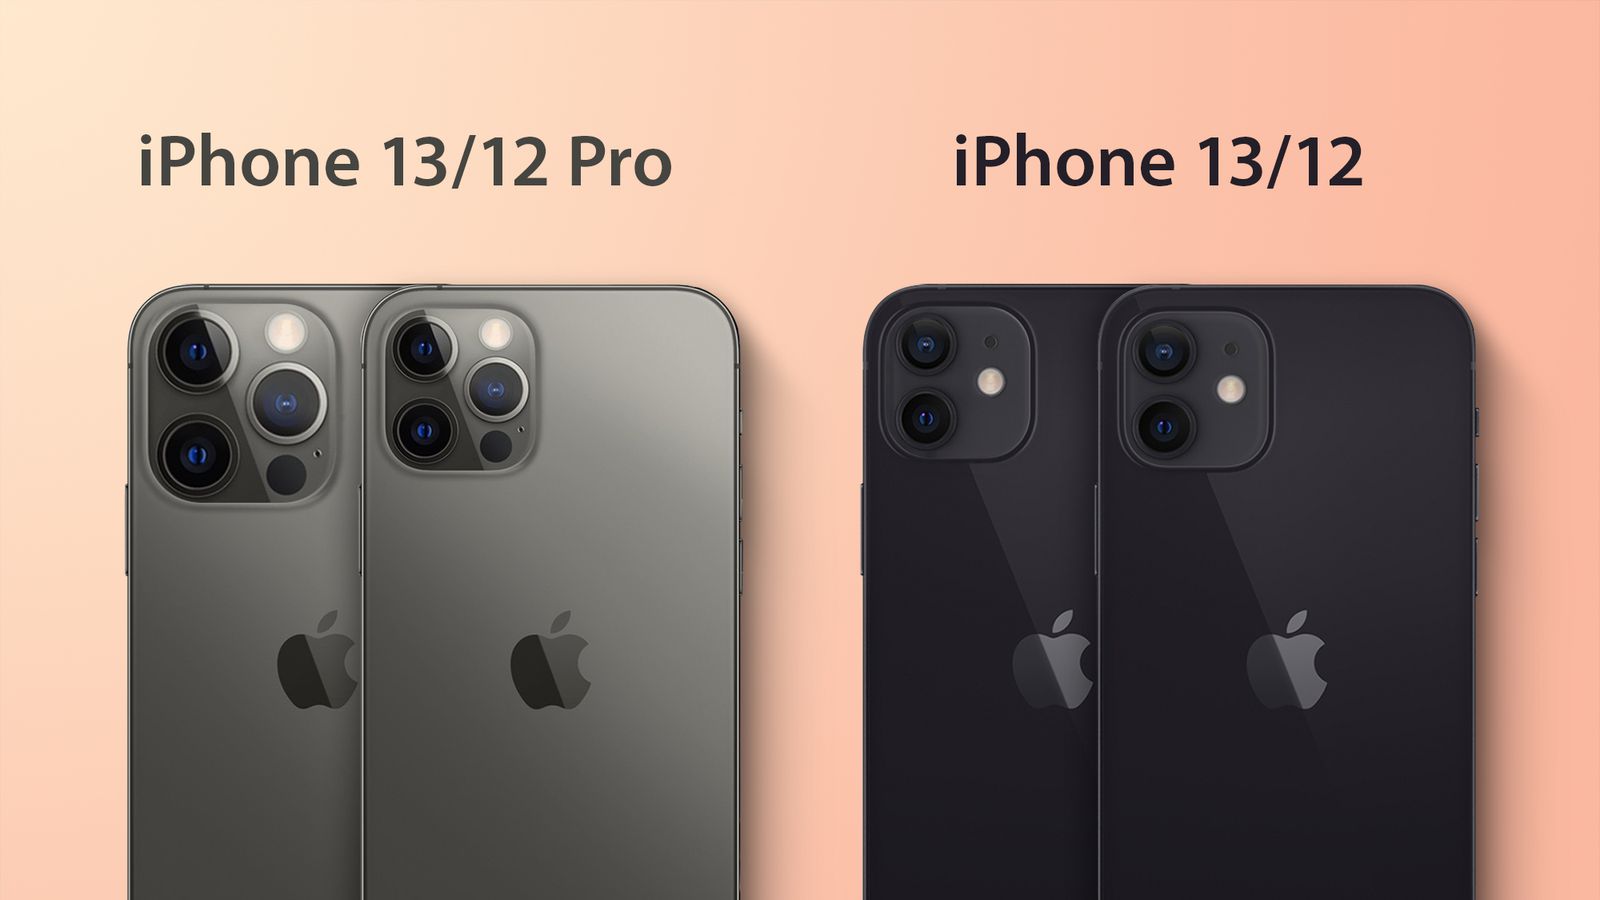 Chiếc điện thoại iPhone 13 sẽ là sự lựa chọn hoàn hảo cho những ai đang tìm kiếm một chiếc điện thoại vừa size vừa dày vừa phải. Hãy cùng xem những thông số kỹ thuật của nó để hiểu rõ hơn về sự tiện lợi mà chiếc điện thoại này mang đến.